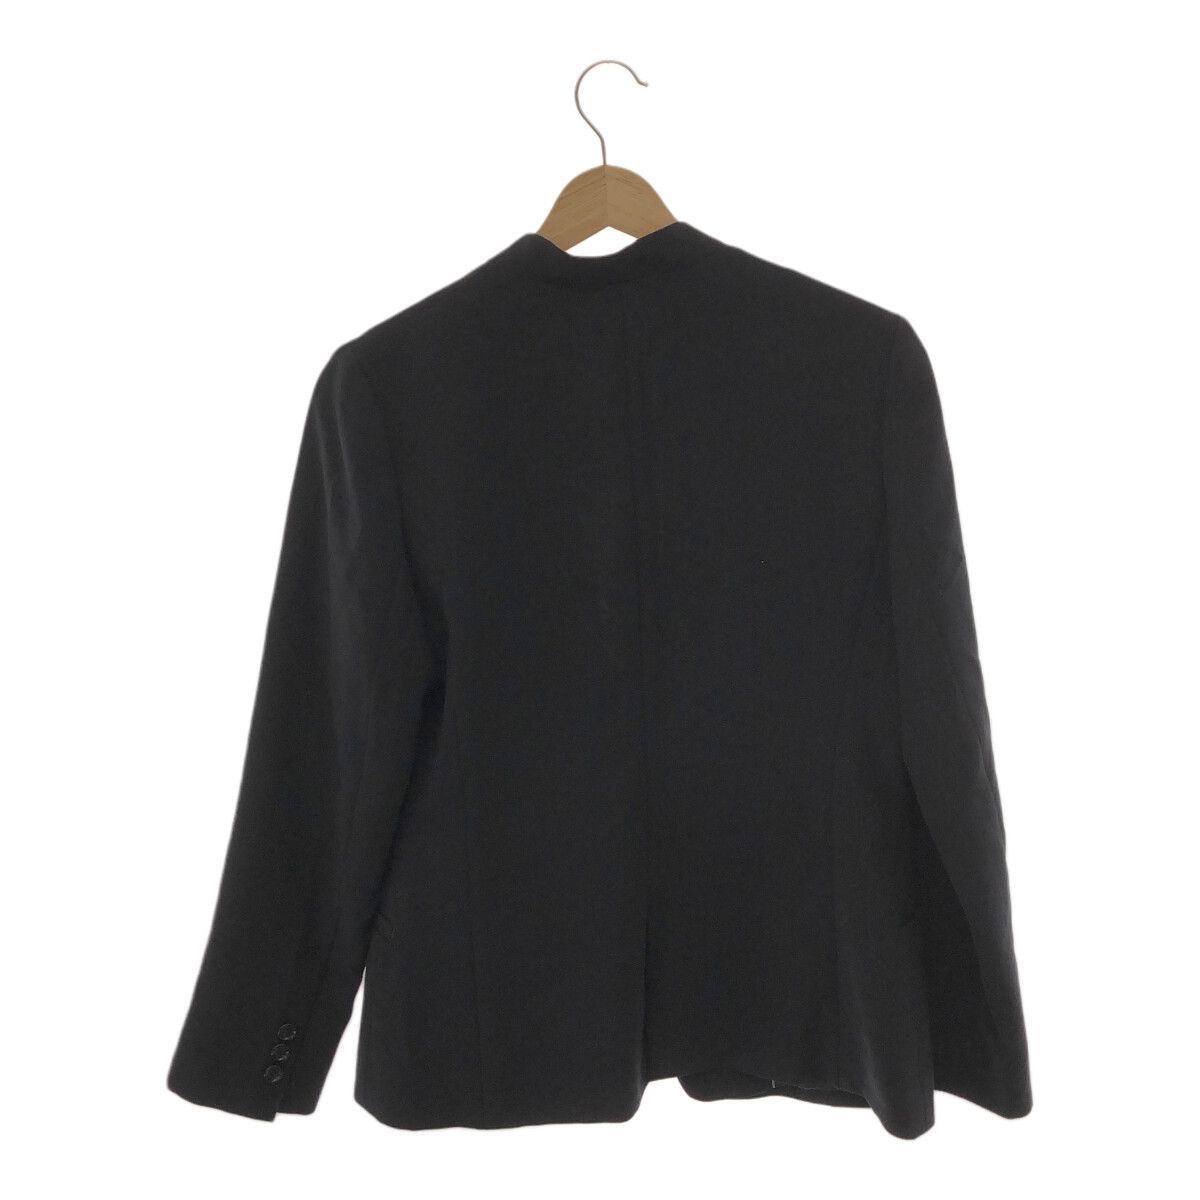 【 обстоятельства ...】 ANCHOR ... машина   пиджак  ... цвет   кнопка   длинный рукав    красивый ...  женский   черный  11 901-5011  доставка бесплатно   бу одежда 